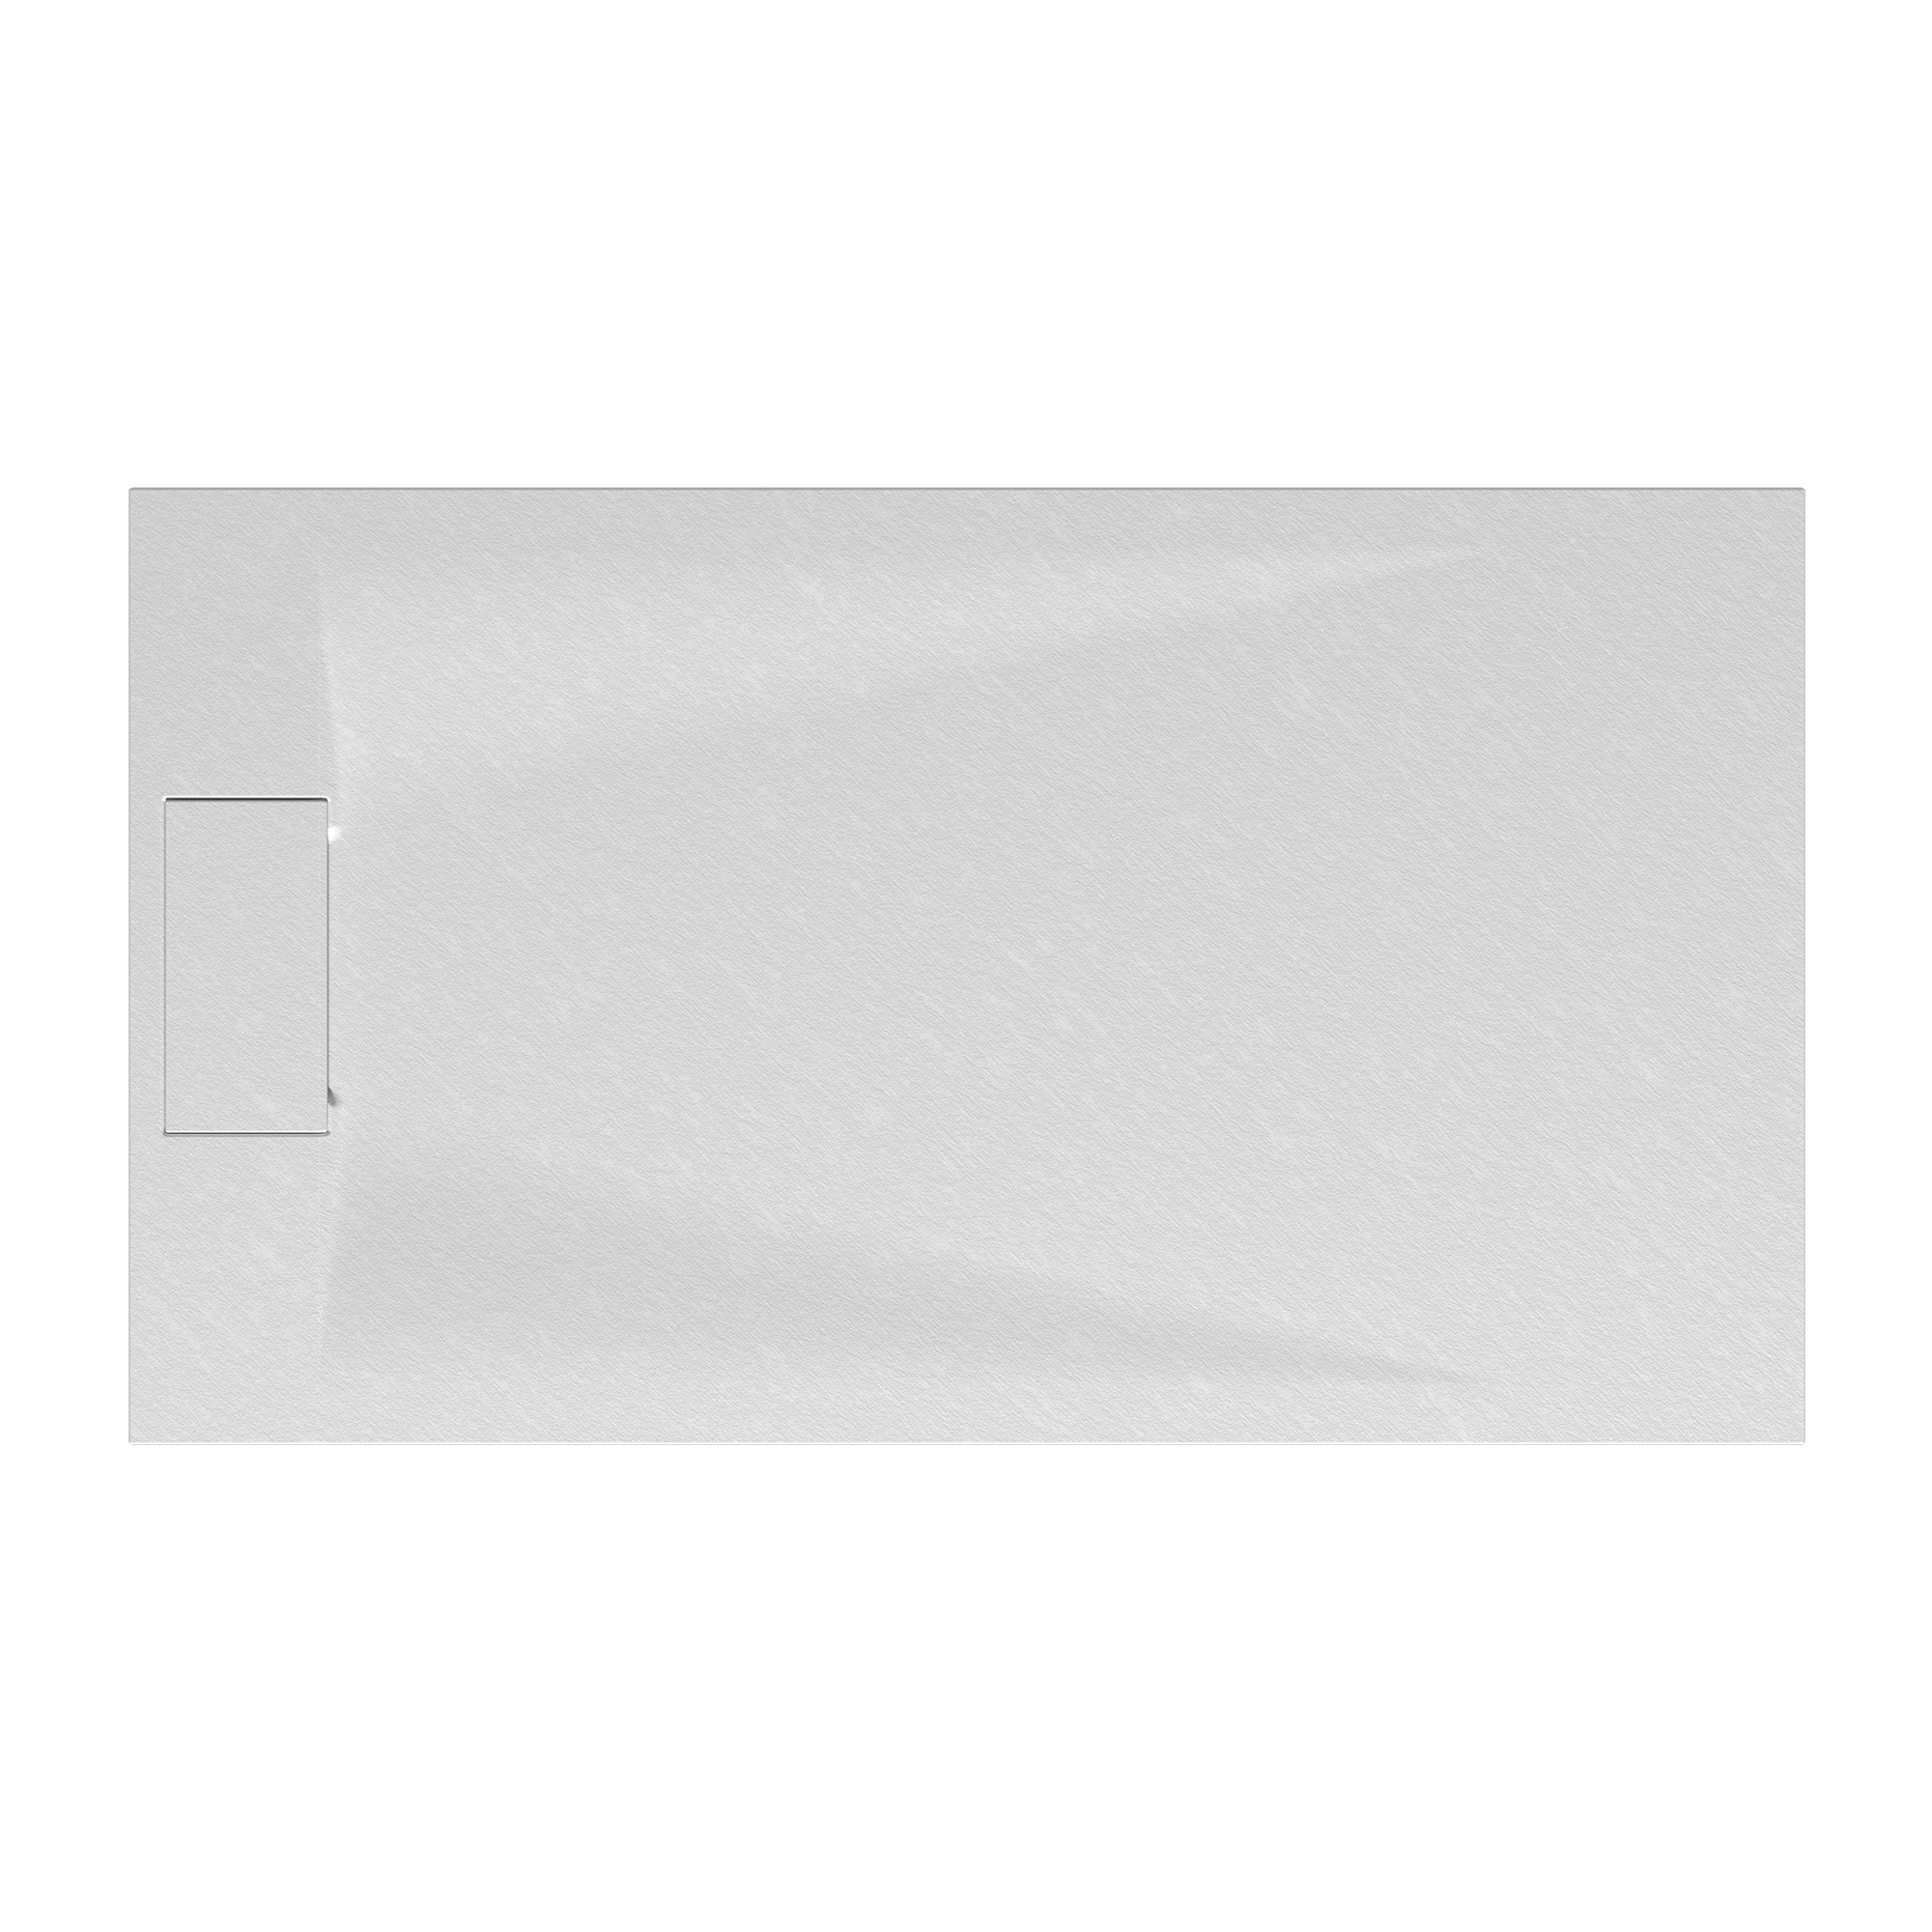 Duschwanne 'Lite Line/Quick72' Steinoptik weiß 90 x 120 cm + product picture